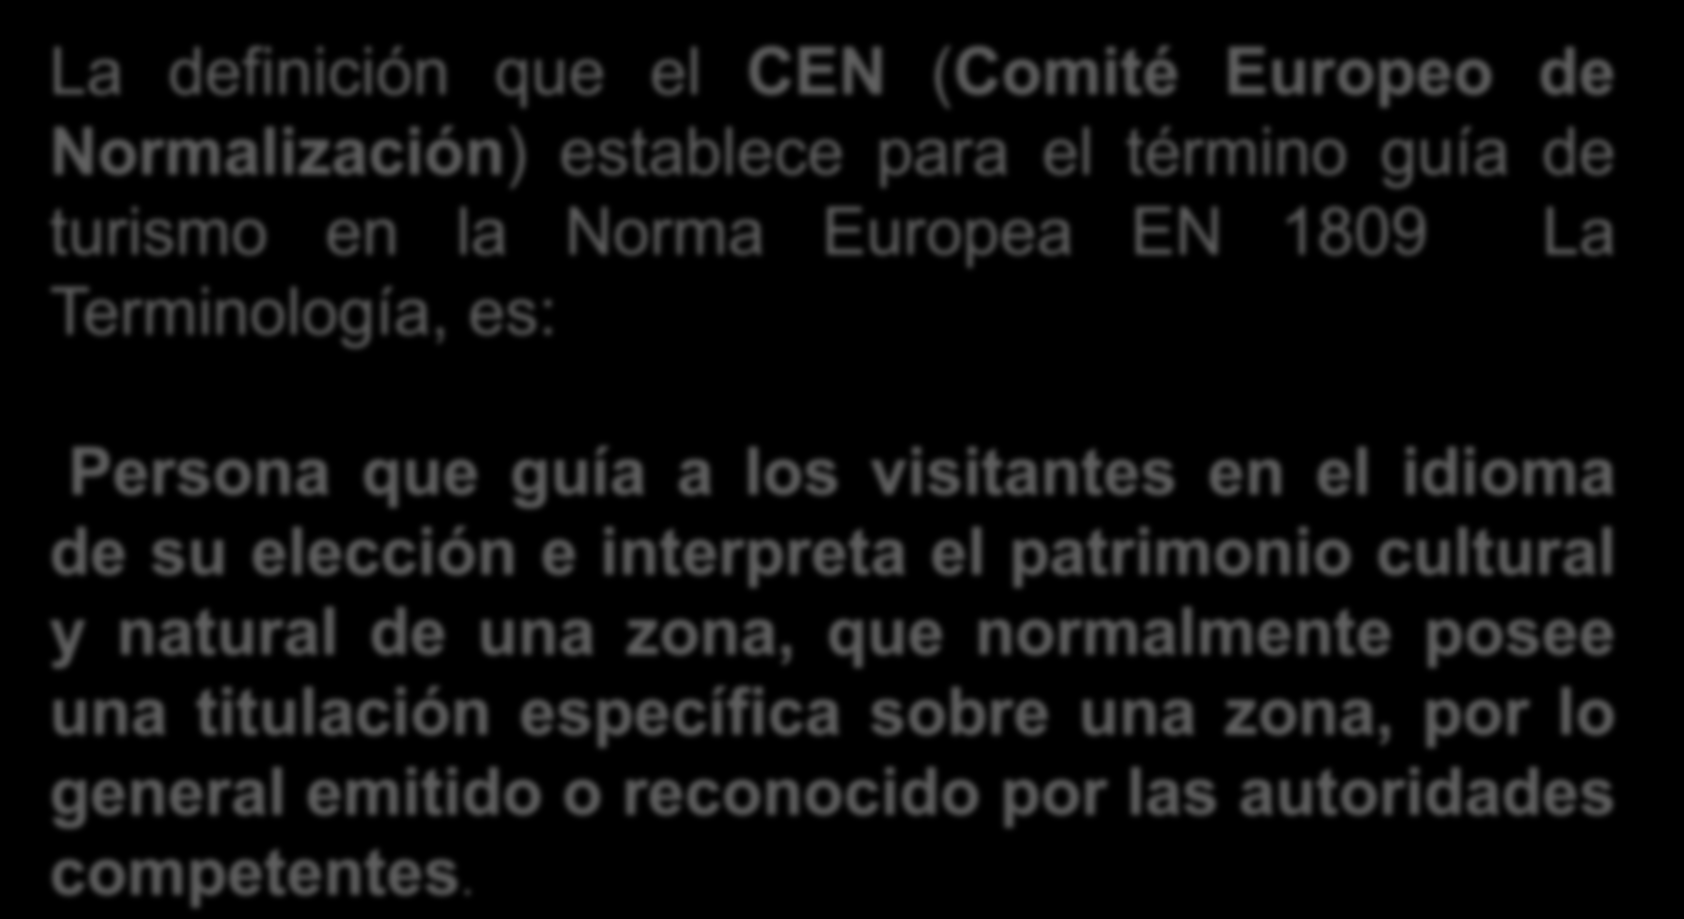 La definición que el CEN (Comité Europeo de Normalización) establece para el término guía de turismo en la Norma Europea EN 1809 La Terminología, es: Persona que guía a los visitantes en el idioma de